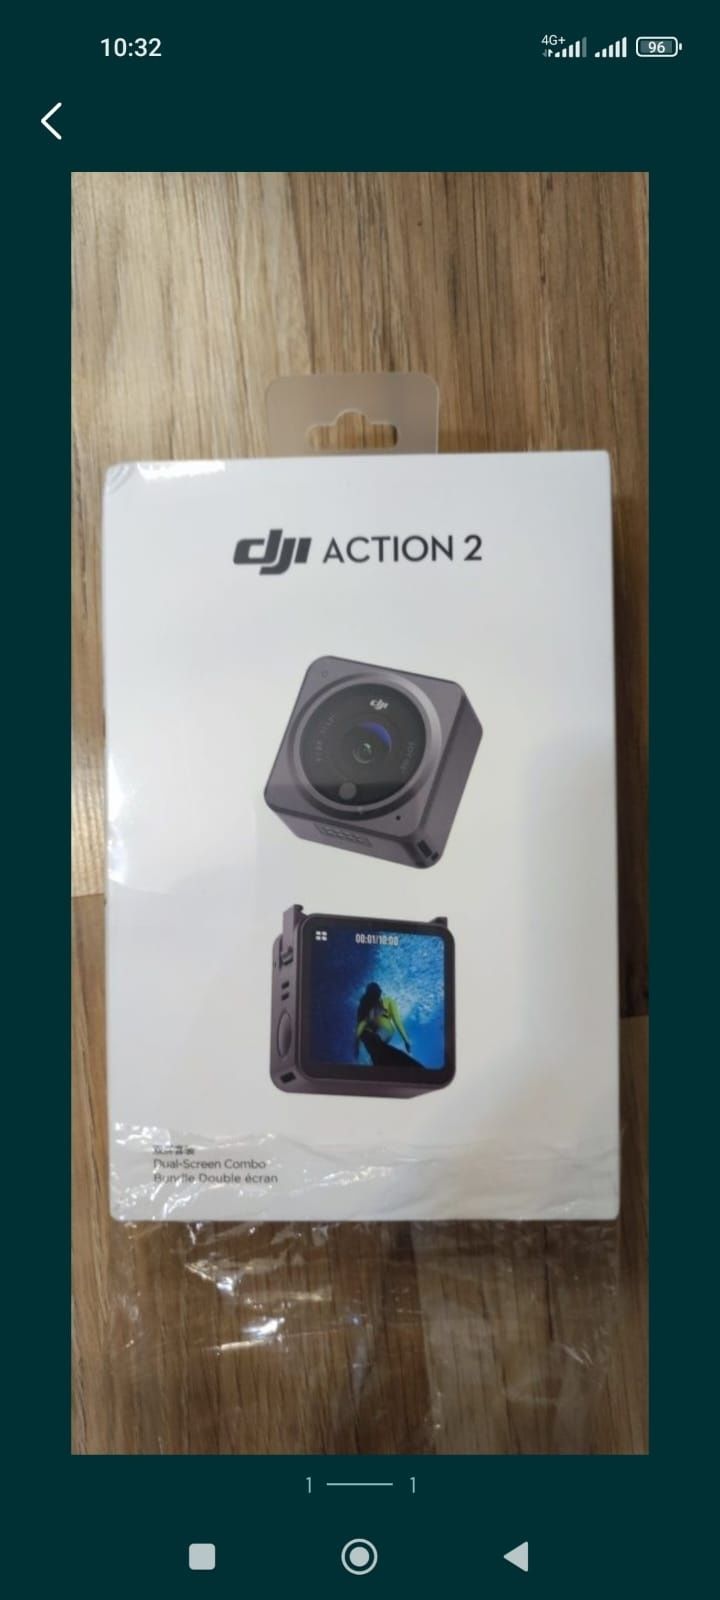 Camera video sport DJI Action 2, Dual Screen Combo